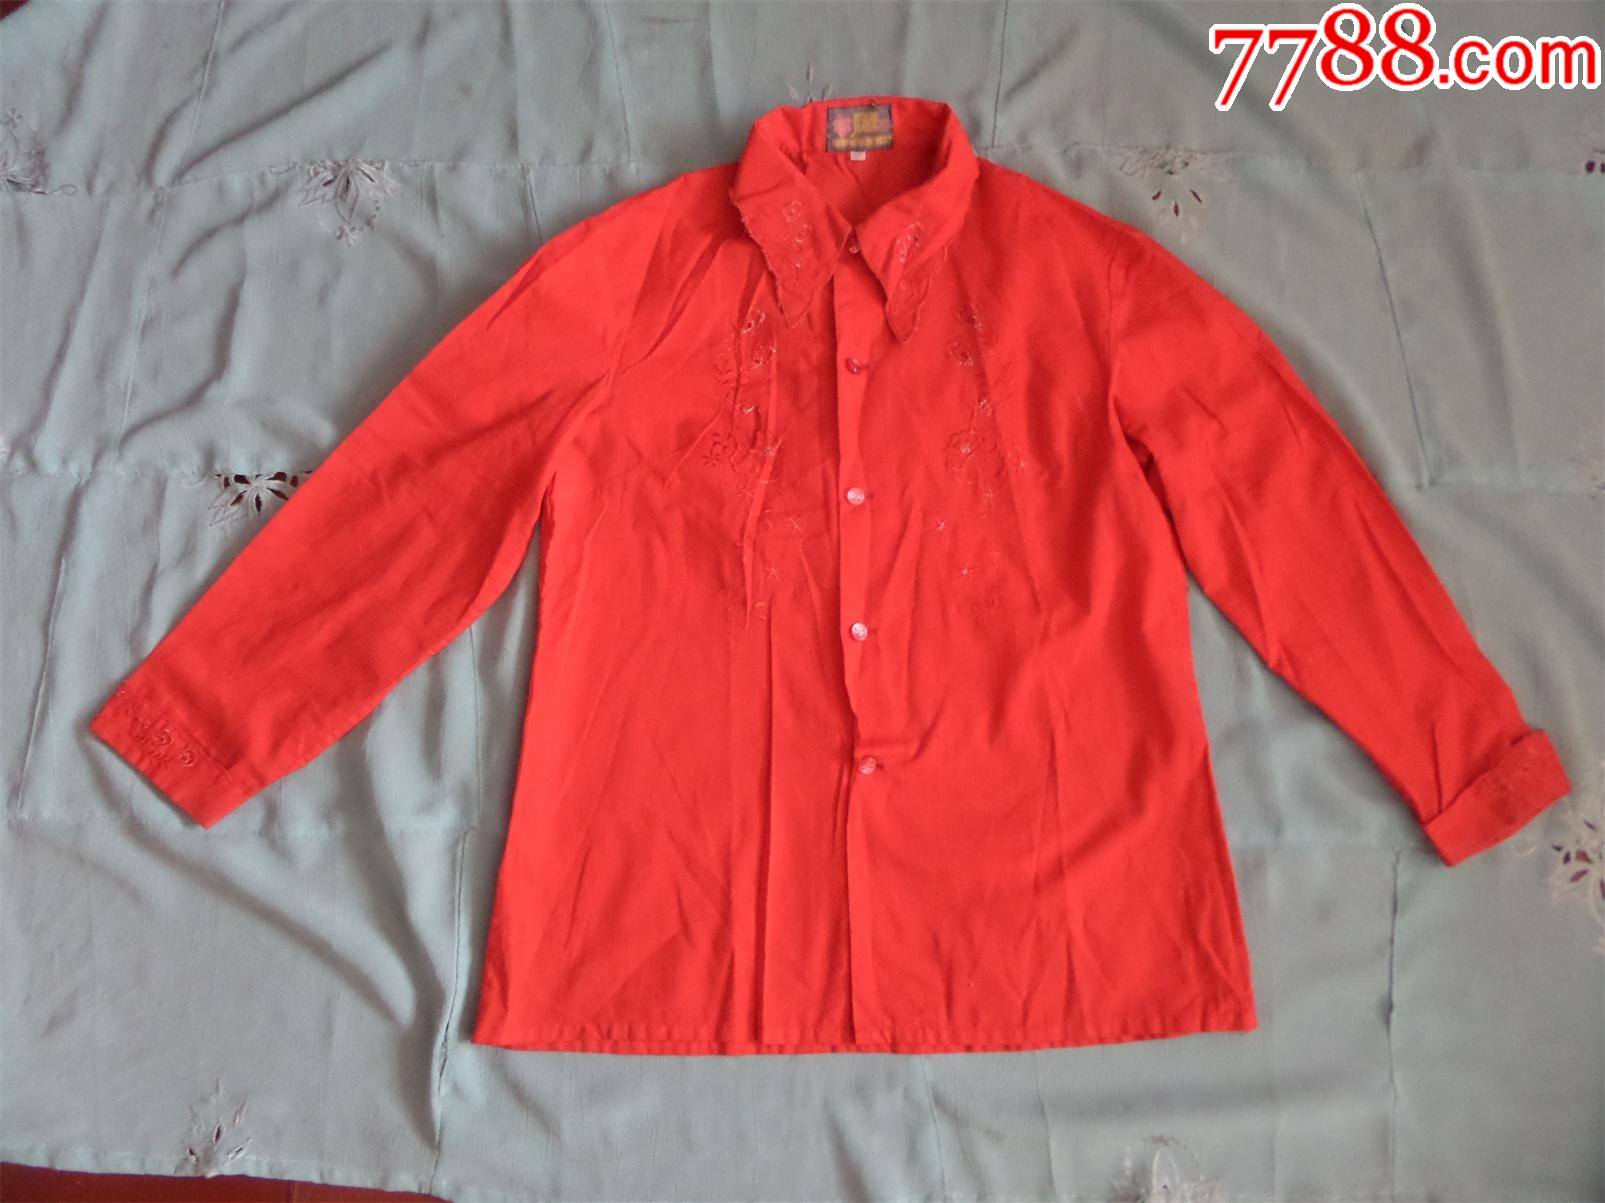 老衬衣780年代有机玻璃扣女式红衬衣影视道具服装1709